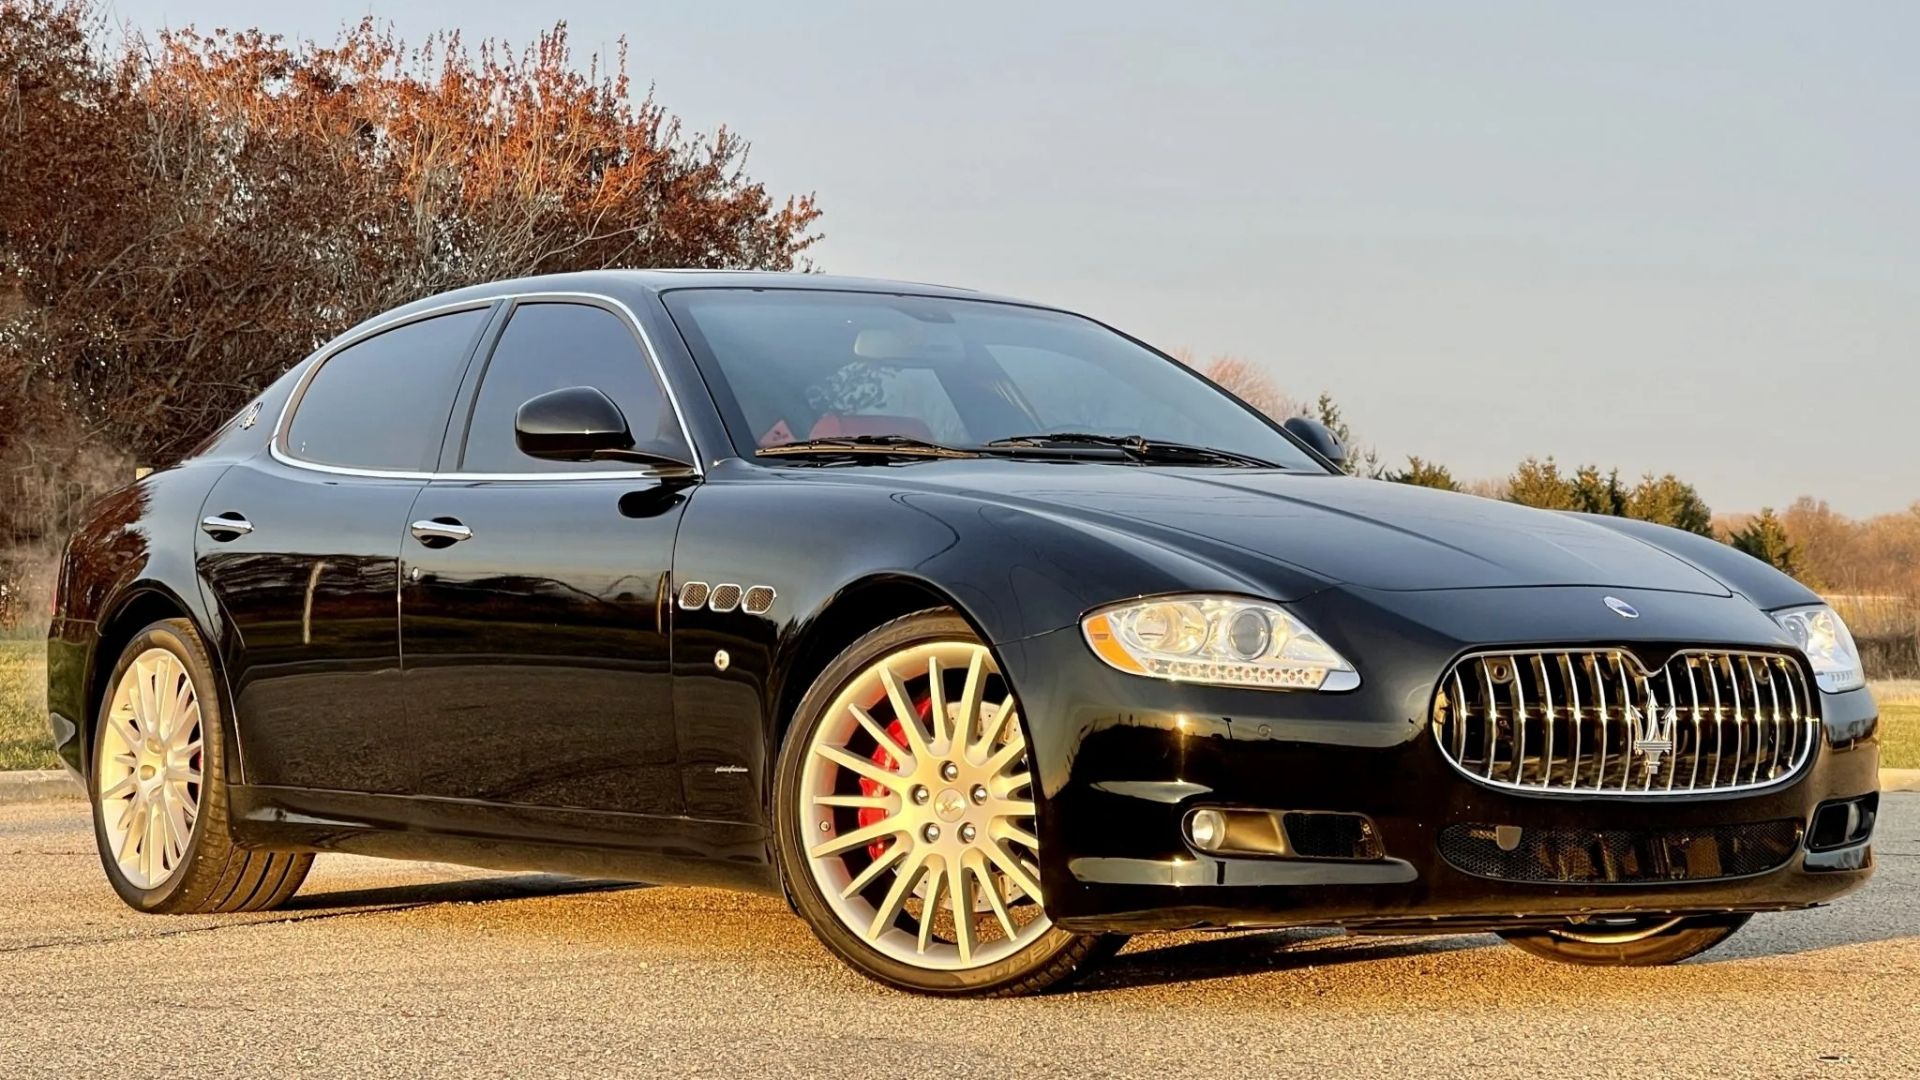 Black Maserati Quattroporte